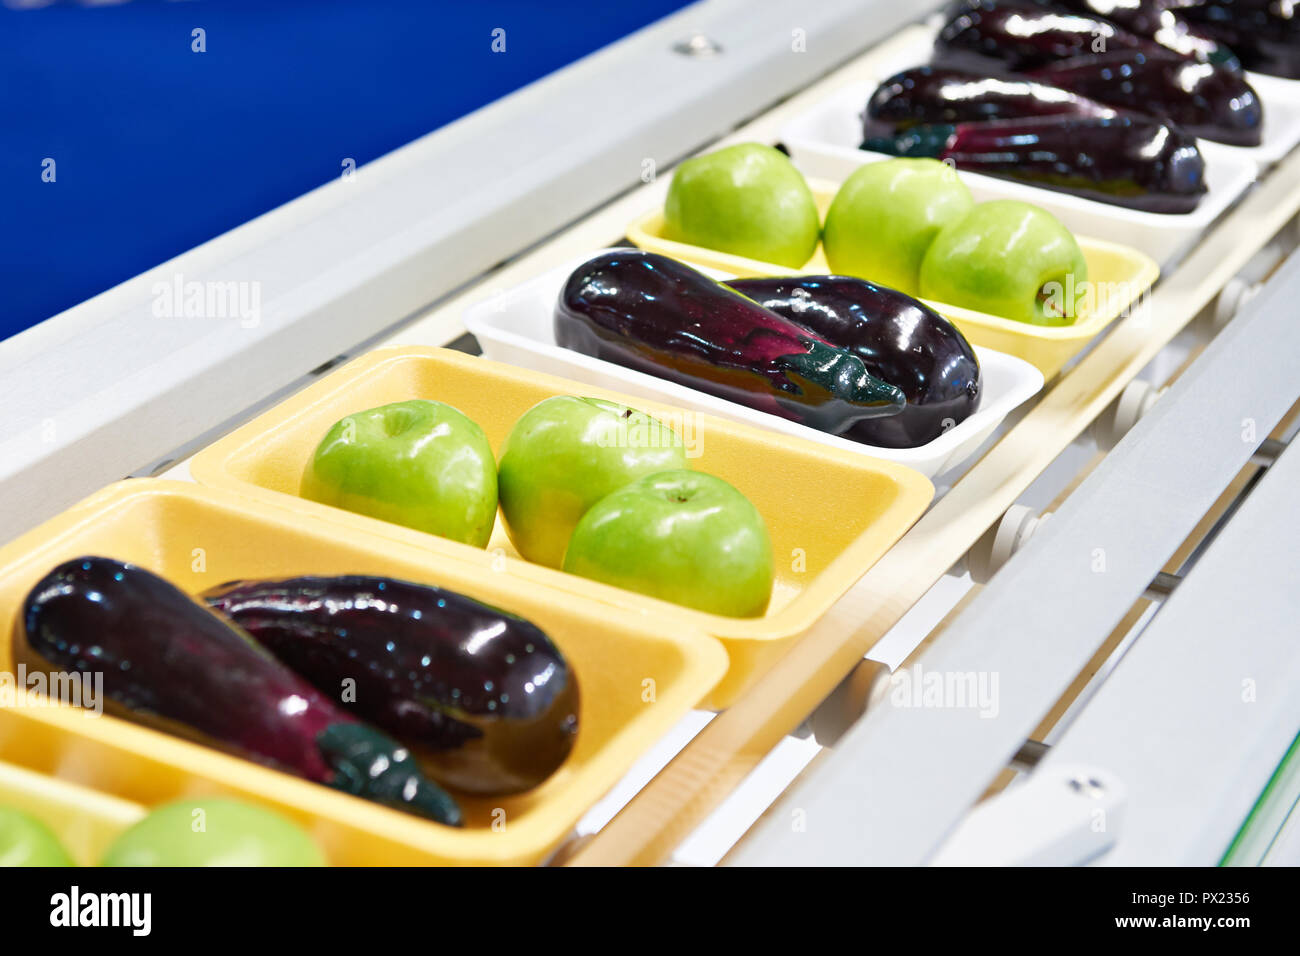 Produits alimentaires les pommes et les aubergines dans l'emballage en plastique sur le convoyeur Banque D'Images